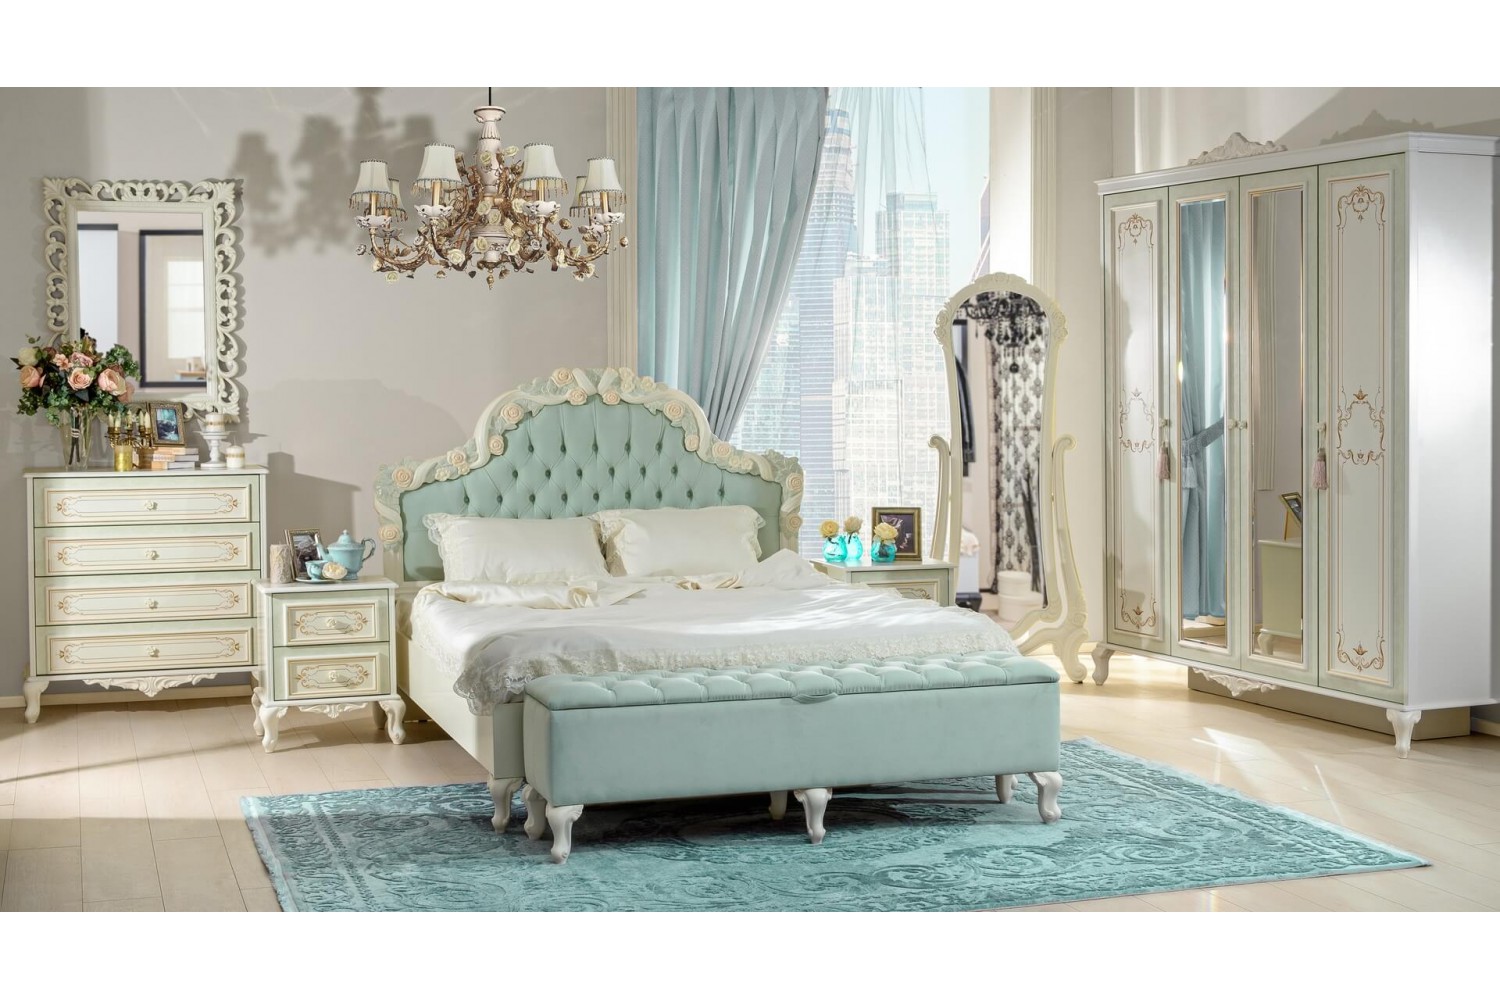 Barock Schlafzimmer in Weiß und Türkis, bestehend aus Kommode, Nachtischen, Doppelbett, Standspiegel und Kleiderschrank.